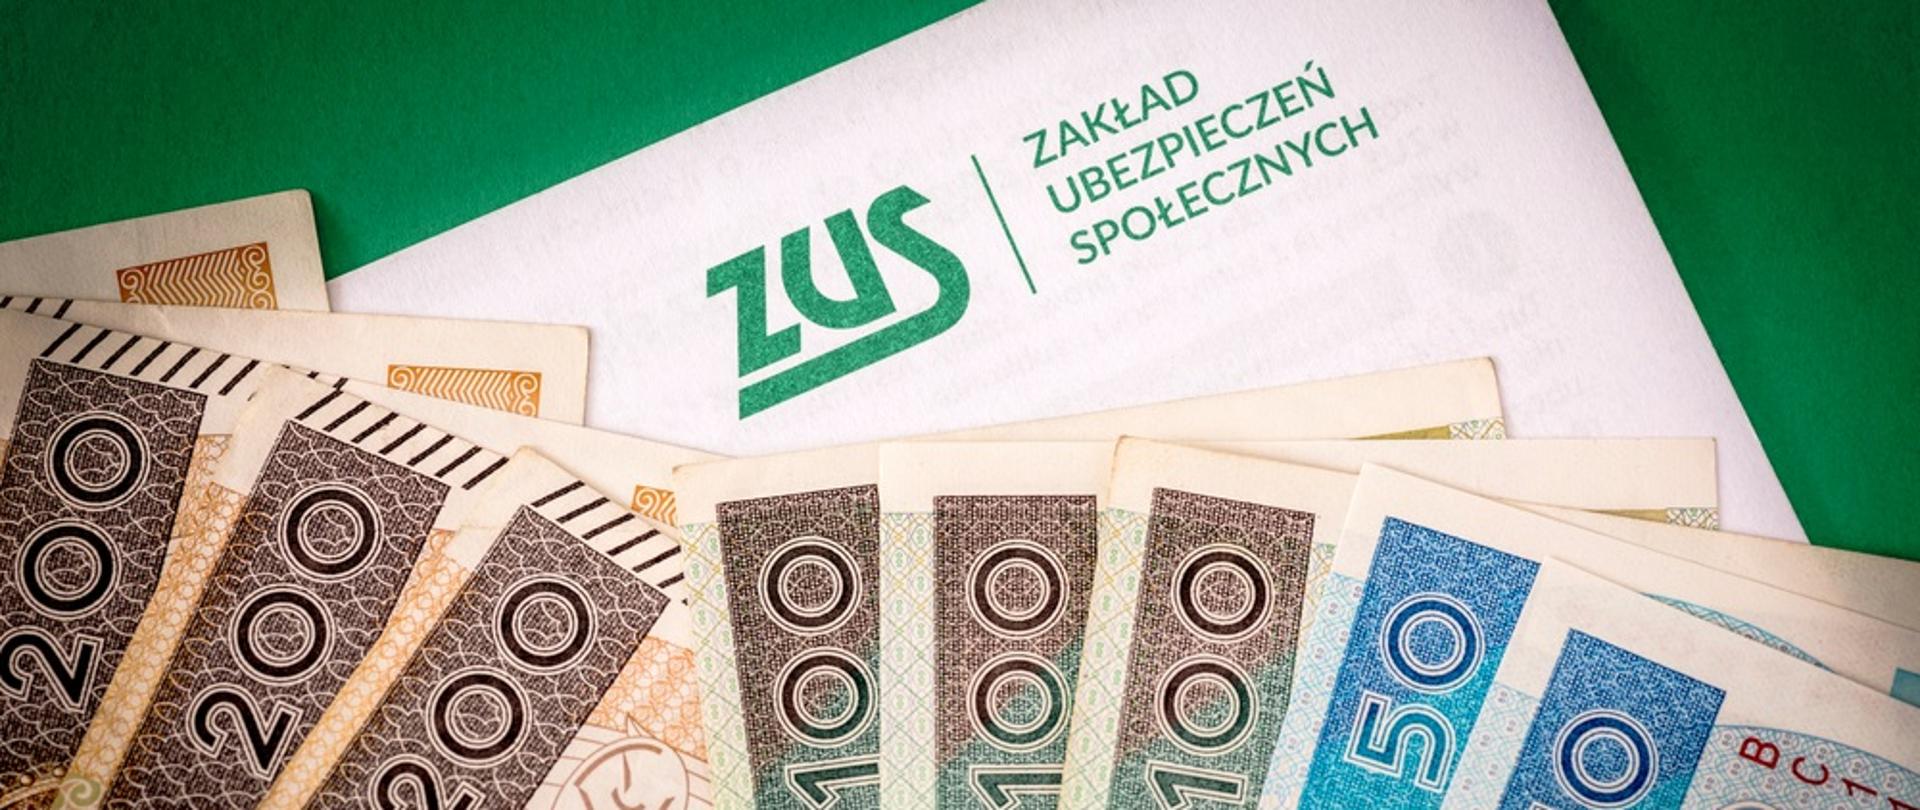 Zdjęcie przedstawia plik banknotów polskich złotych 50, 100, 200 na tle kartki z podpisem ZUS - Zakład Ubezpieczeń Społecznych 